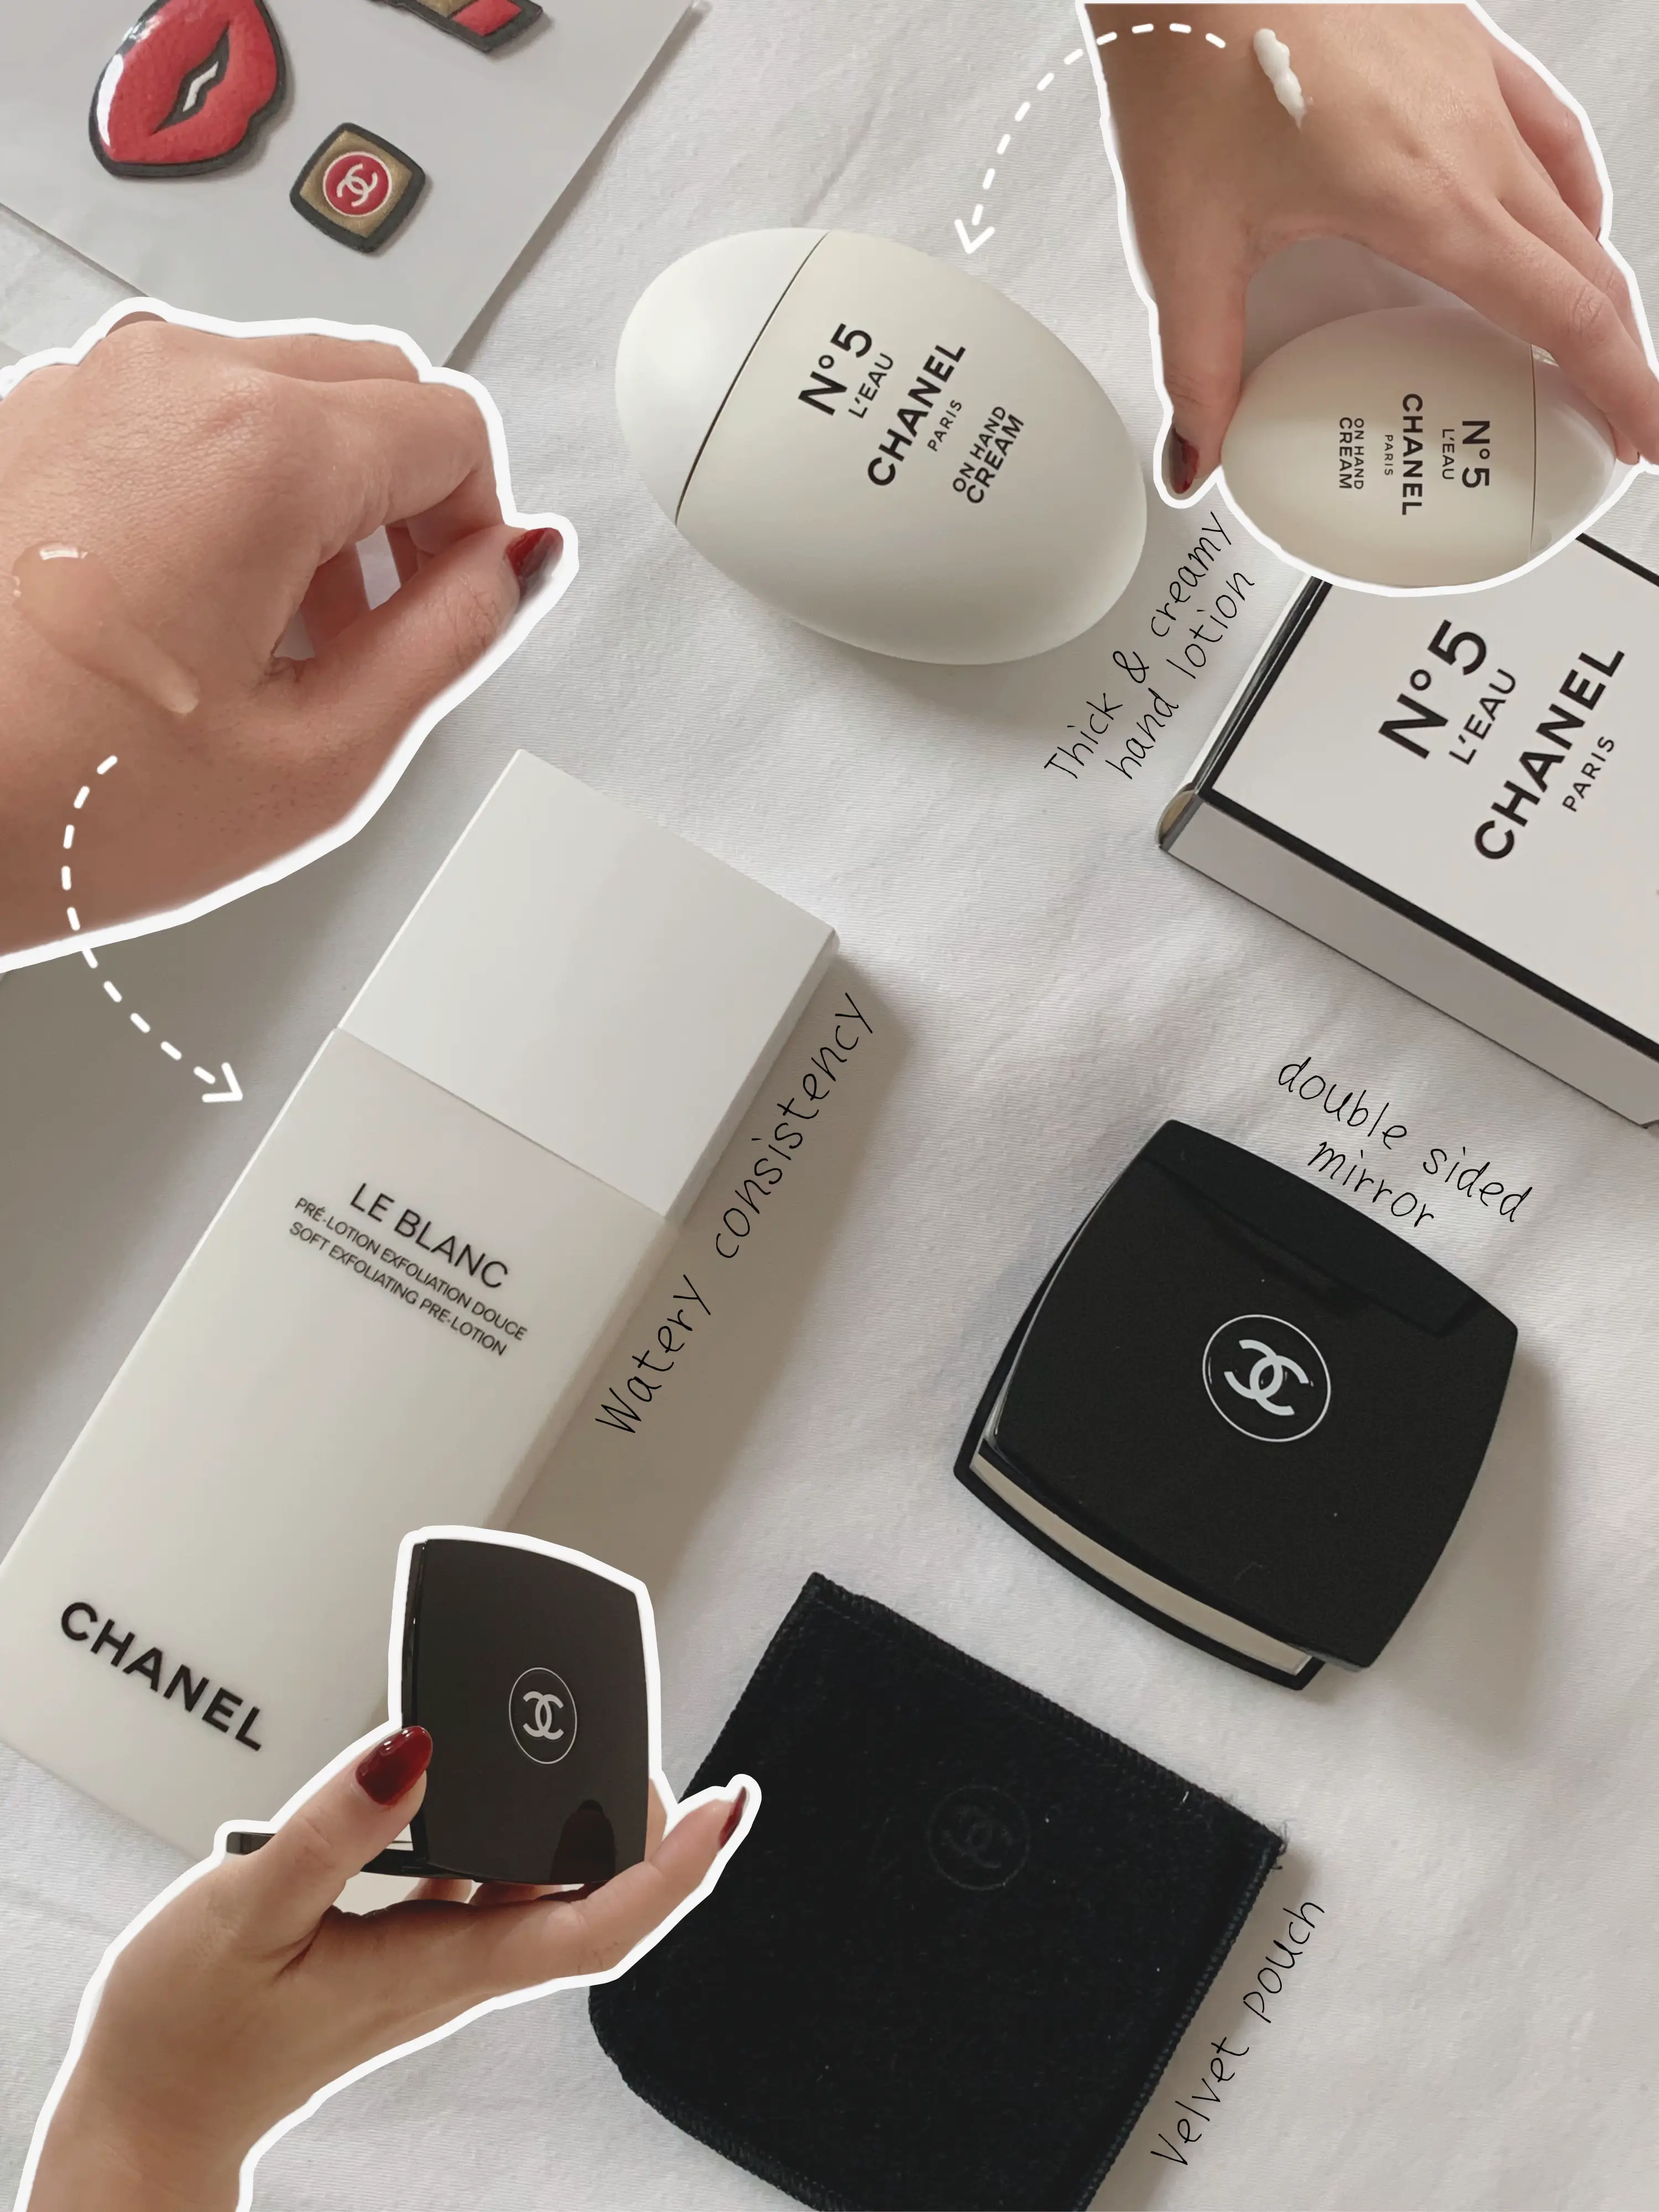 Gift ideas: Chanel under $100✨💅🏻